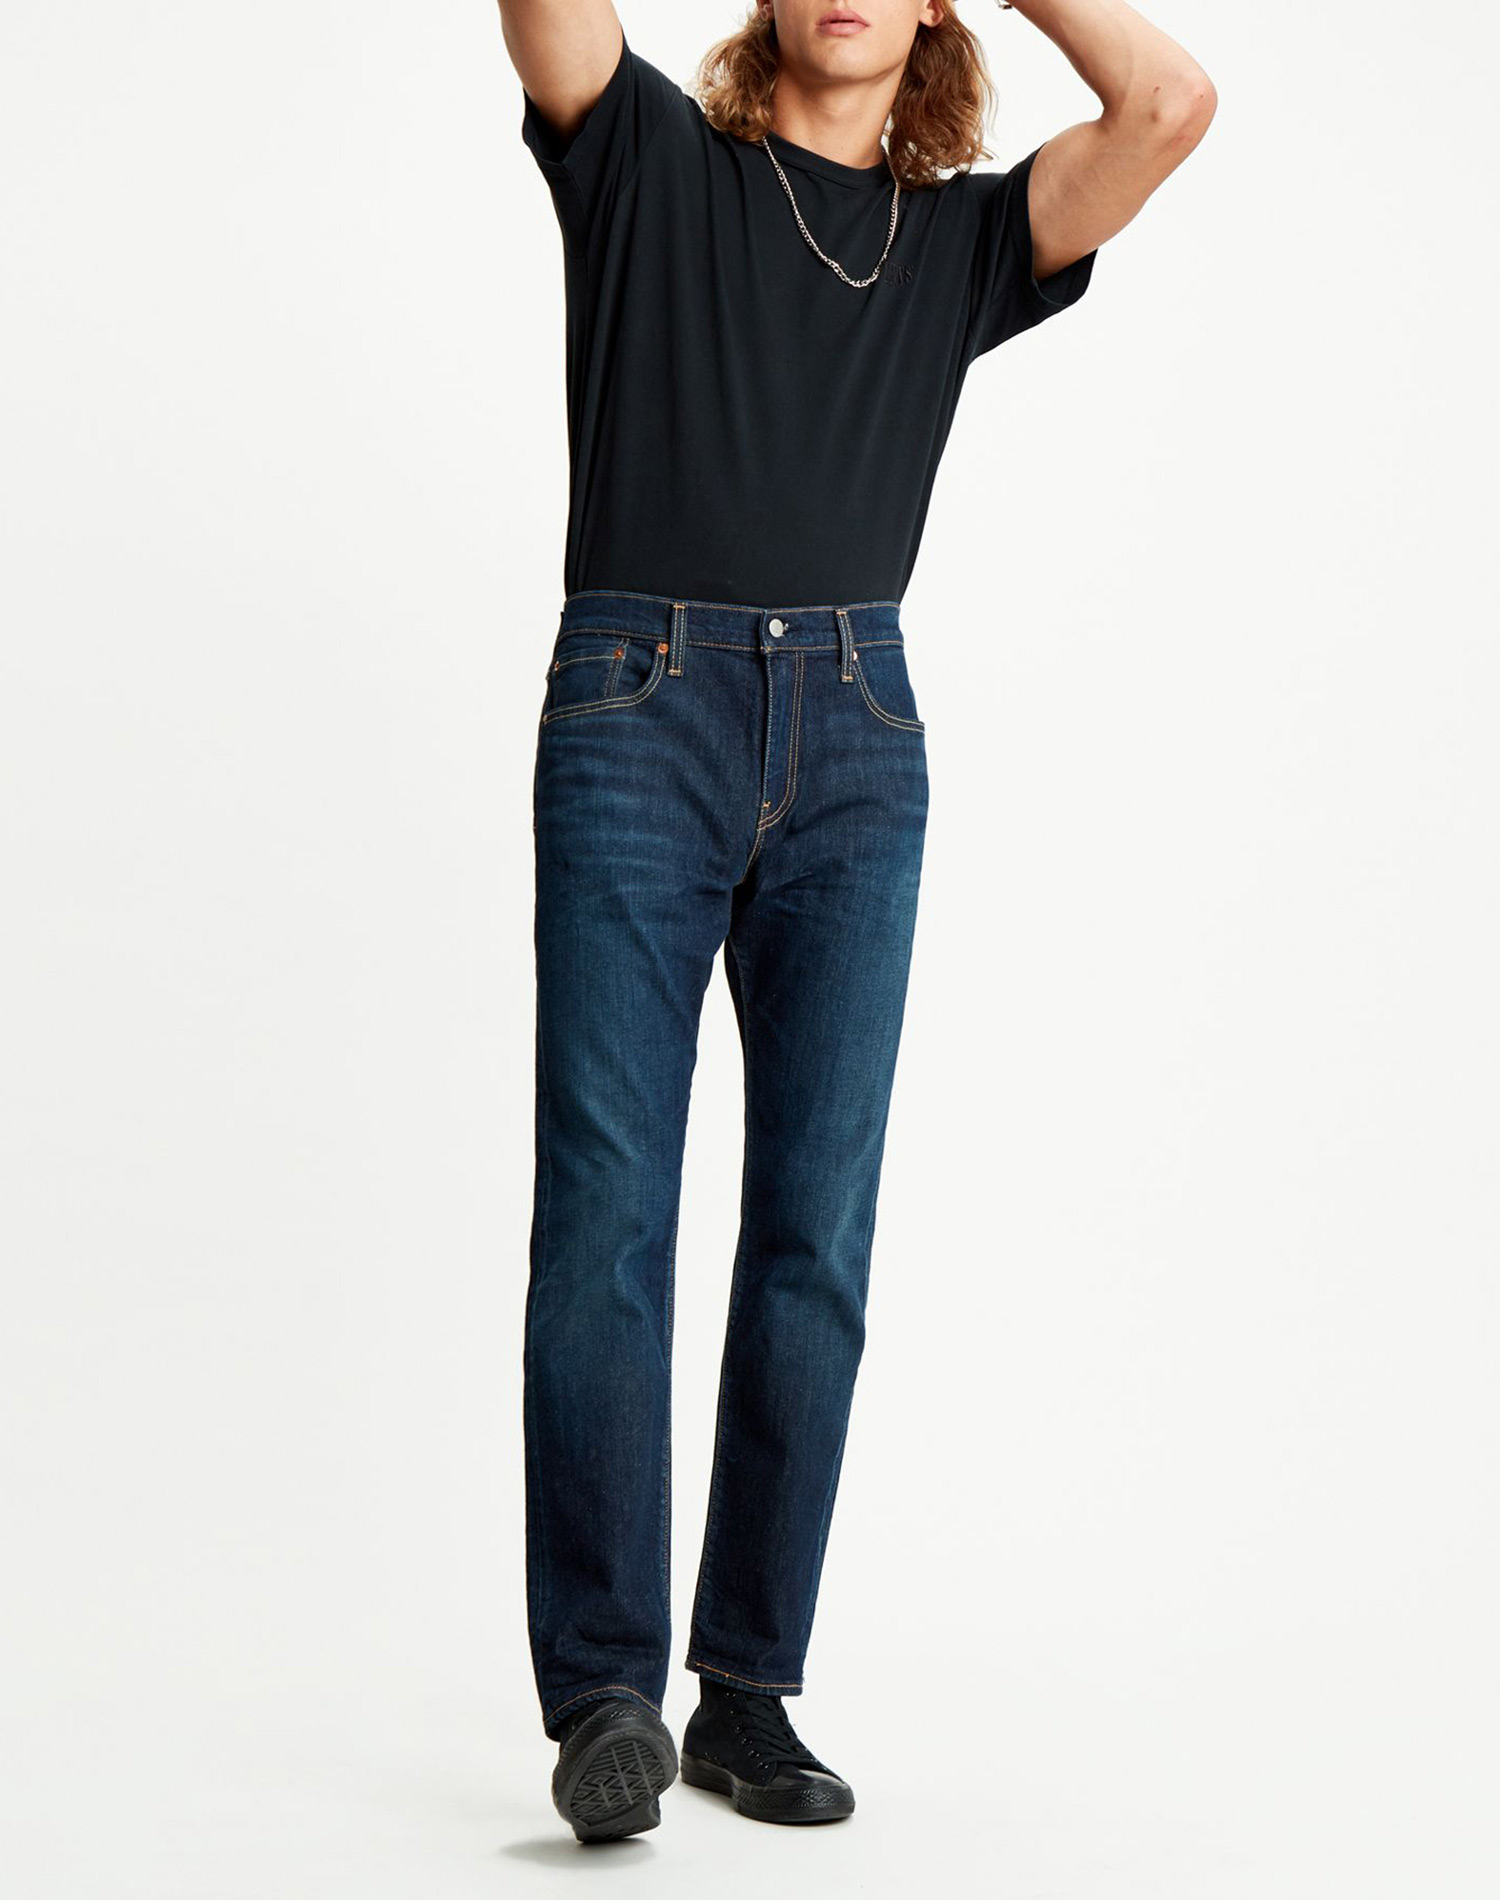 Levi's® 502™ taper pantalones vaqueros de hombre 59684-0085 azul oscuro - tallas extra